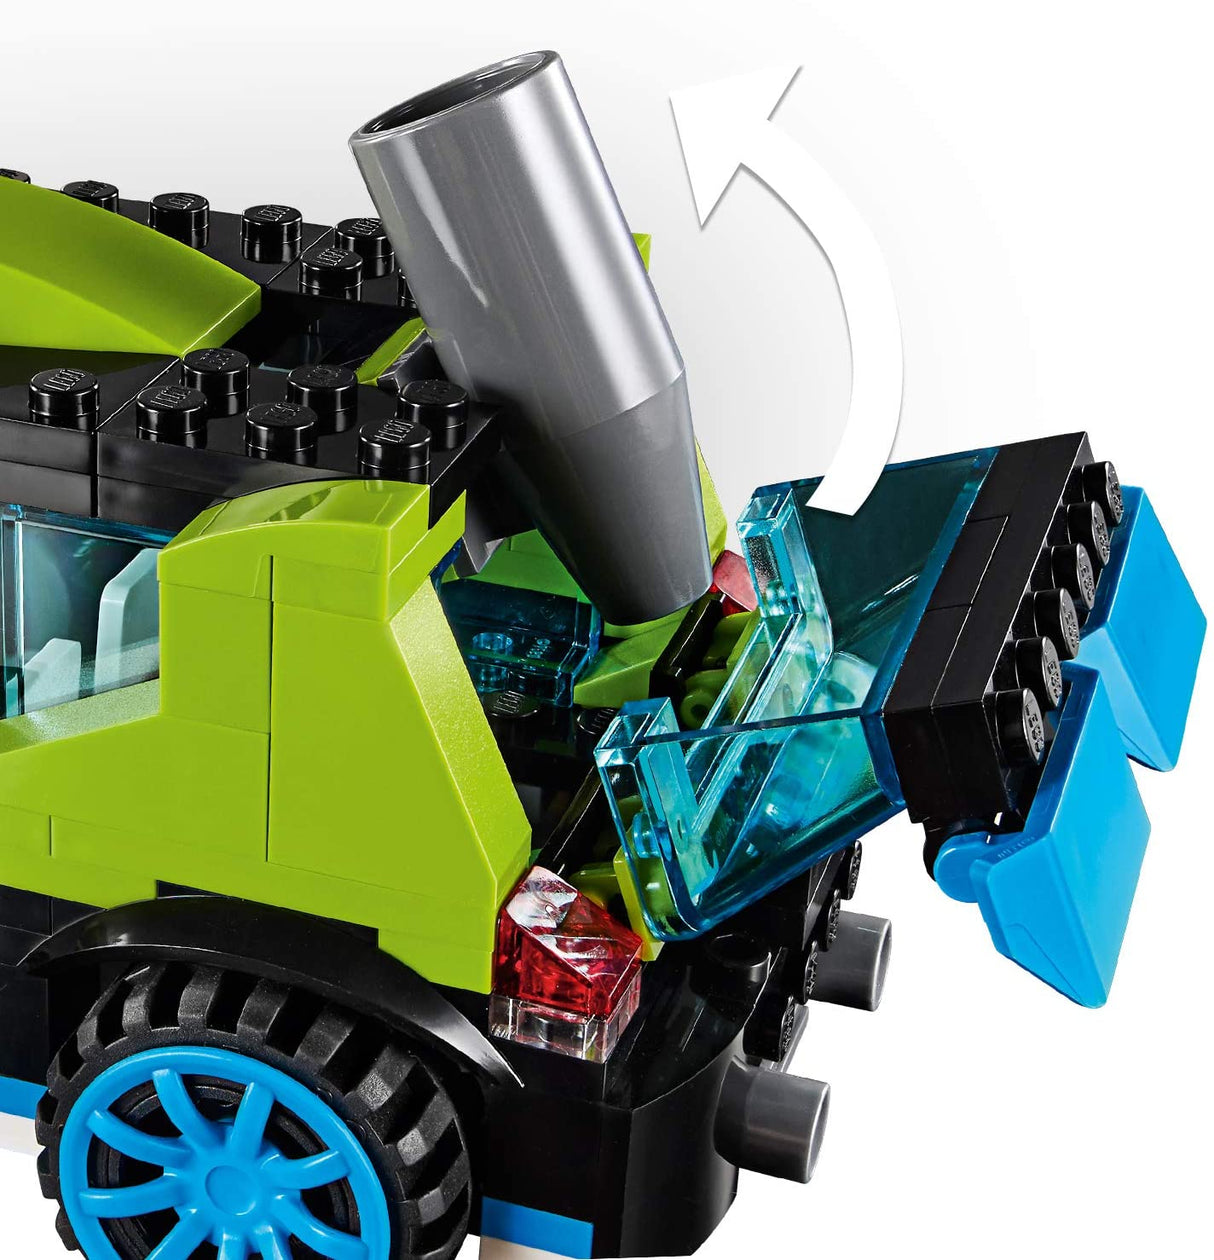 LEGO Creator 31074 Carro Foguete de Rali